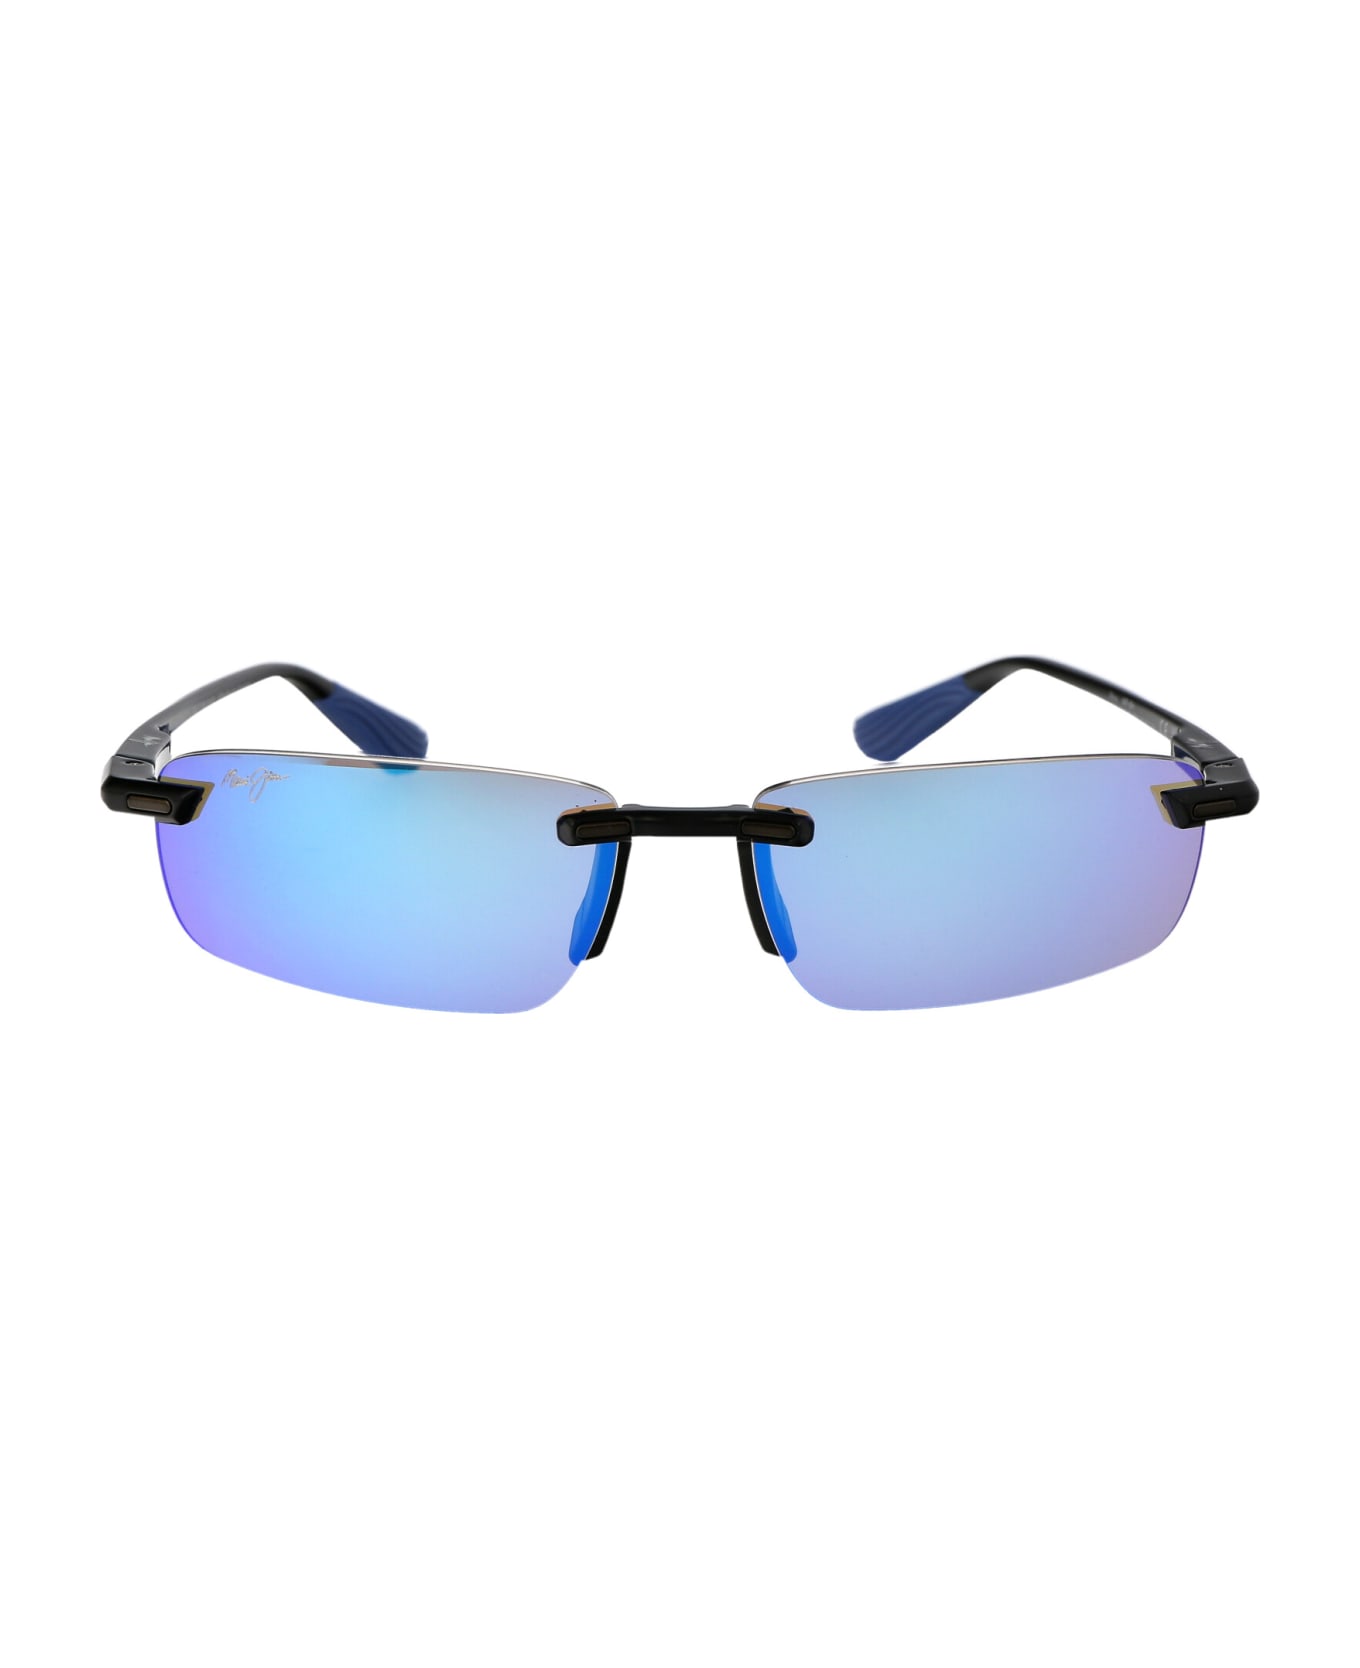 Maui Jim Ilikou Sunglasses - 02 BLUE HAWAII ILIKOU SHINY BLACK W/ BLUE